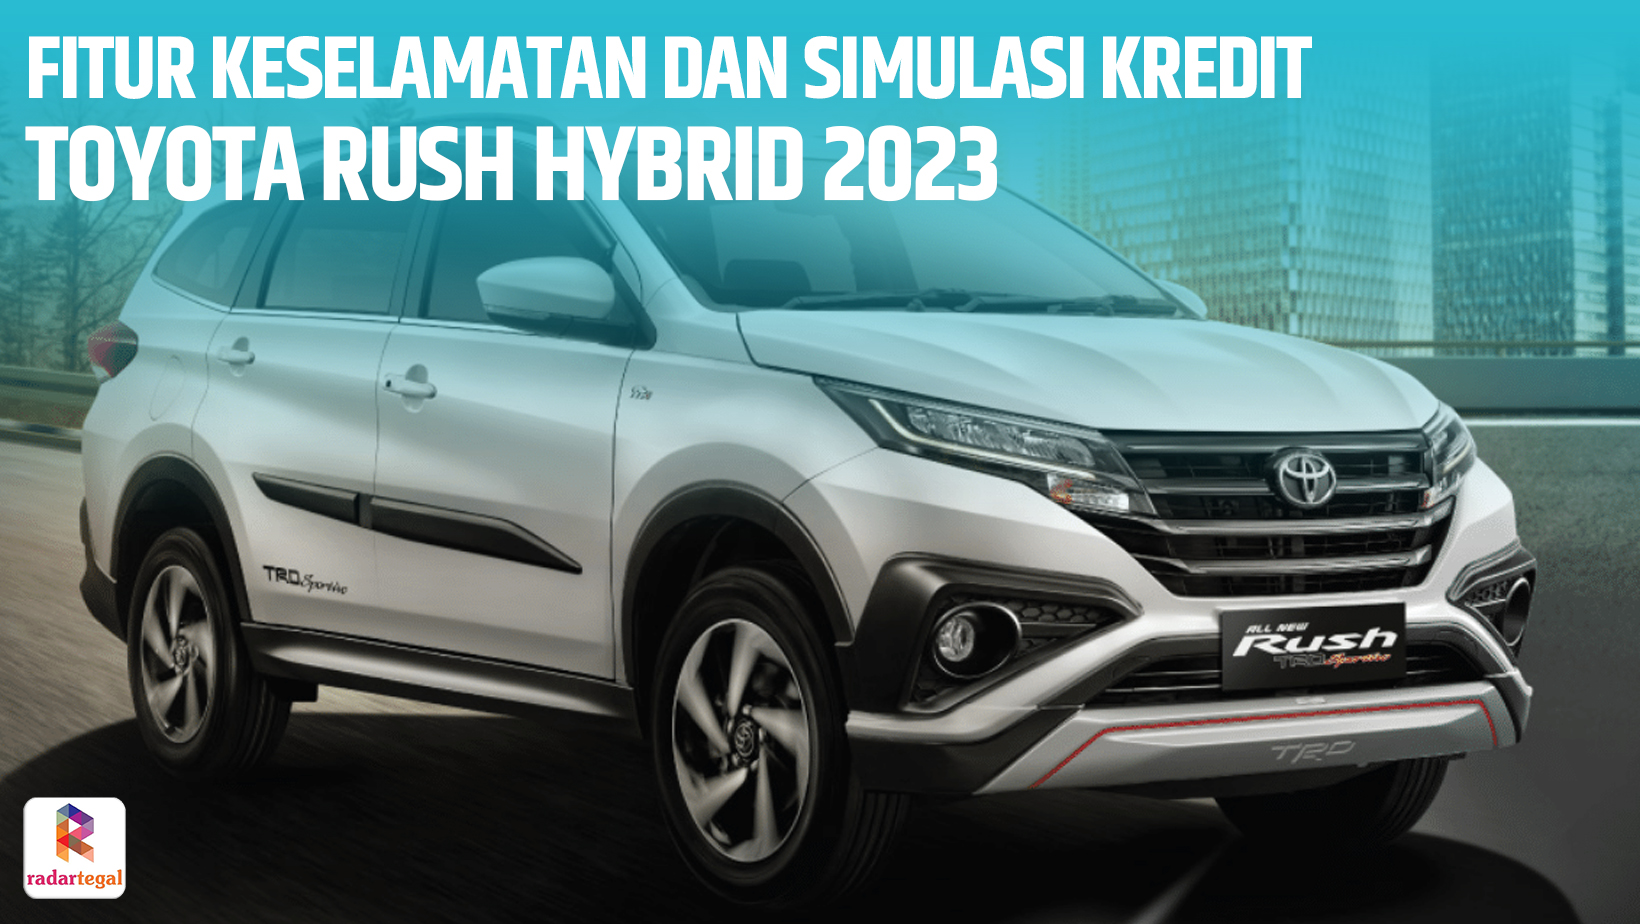 Fitur Keselamatan Toyota Rush Hybrid 2023 Lengkap dan Terjamin, Cicilan Perbulan Mulai Rp7 Juta DP Ringan